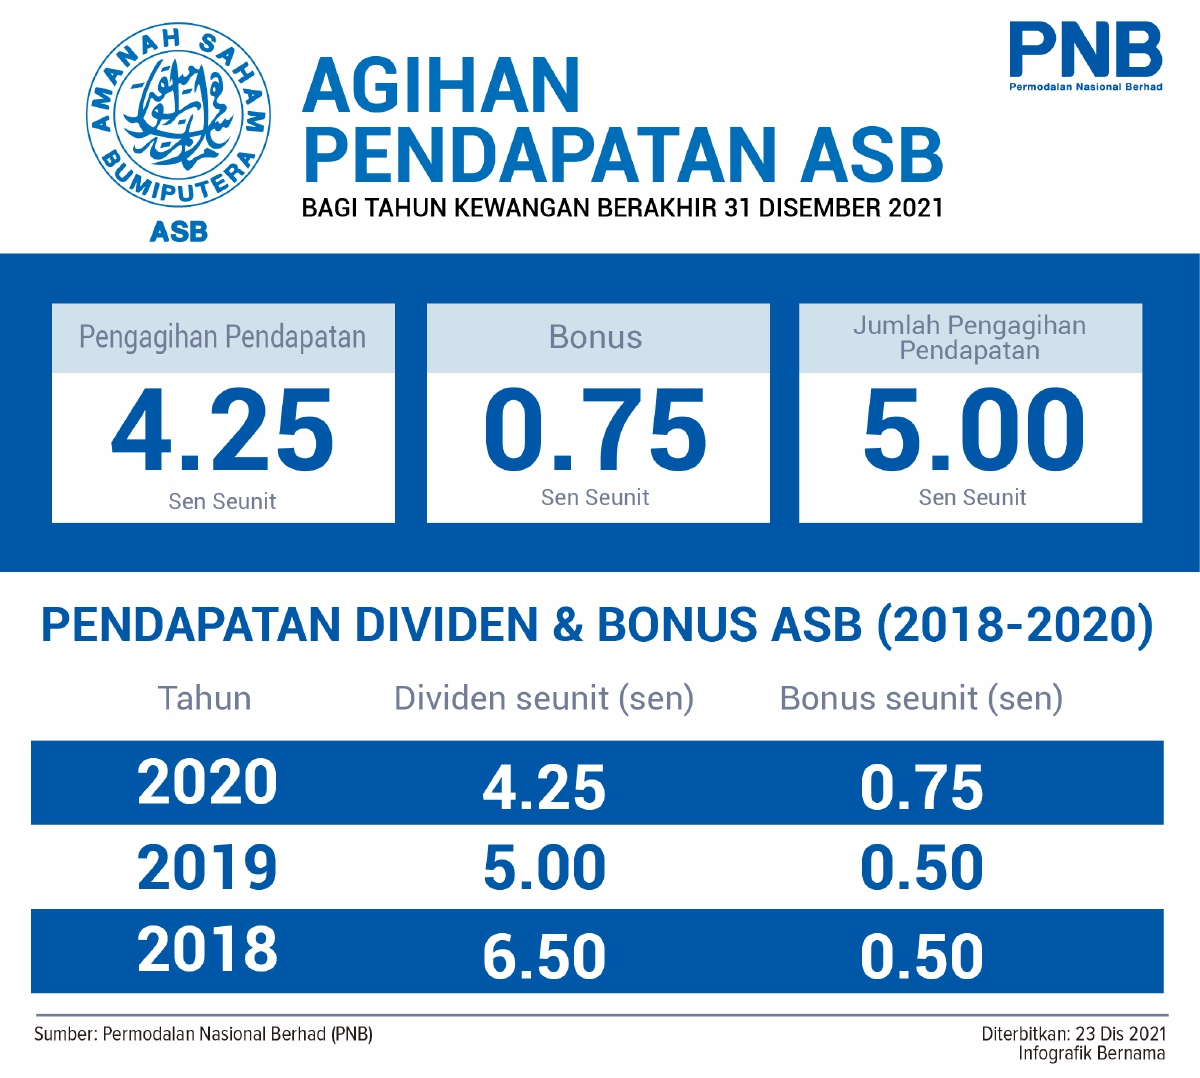 Asb dividen 2021